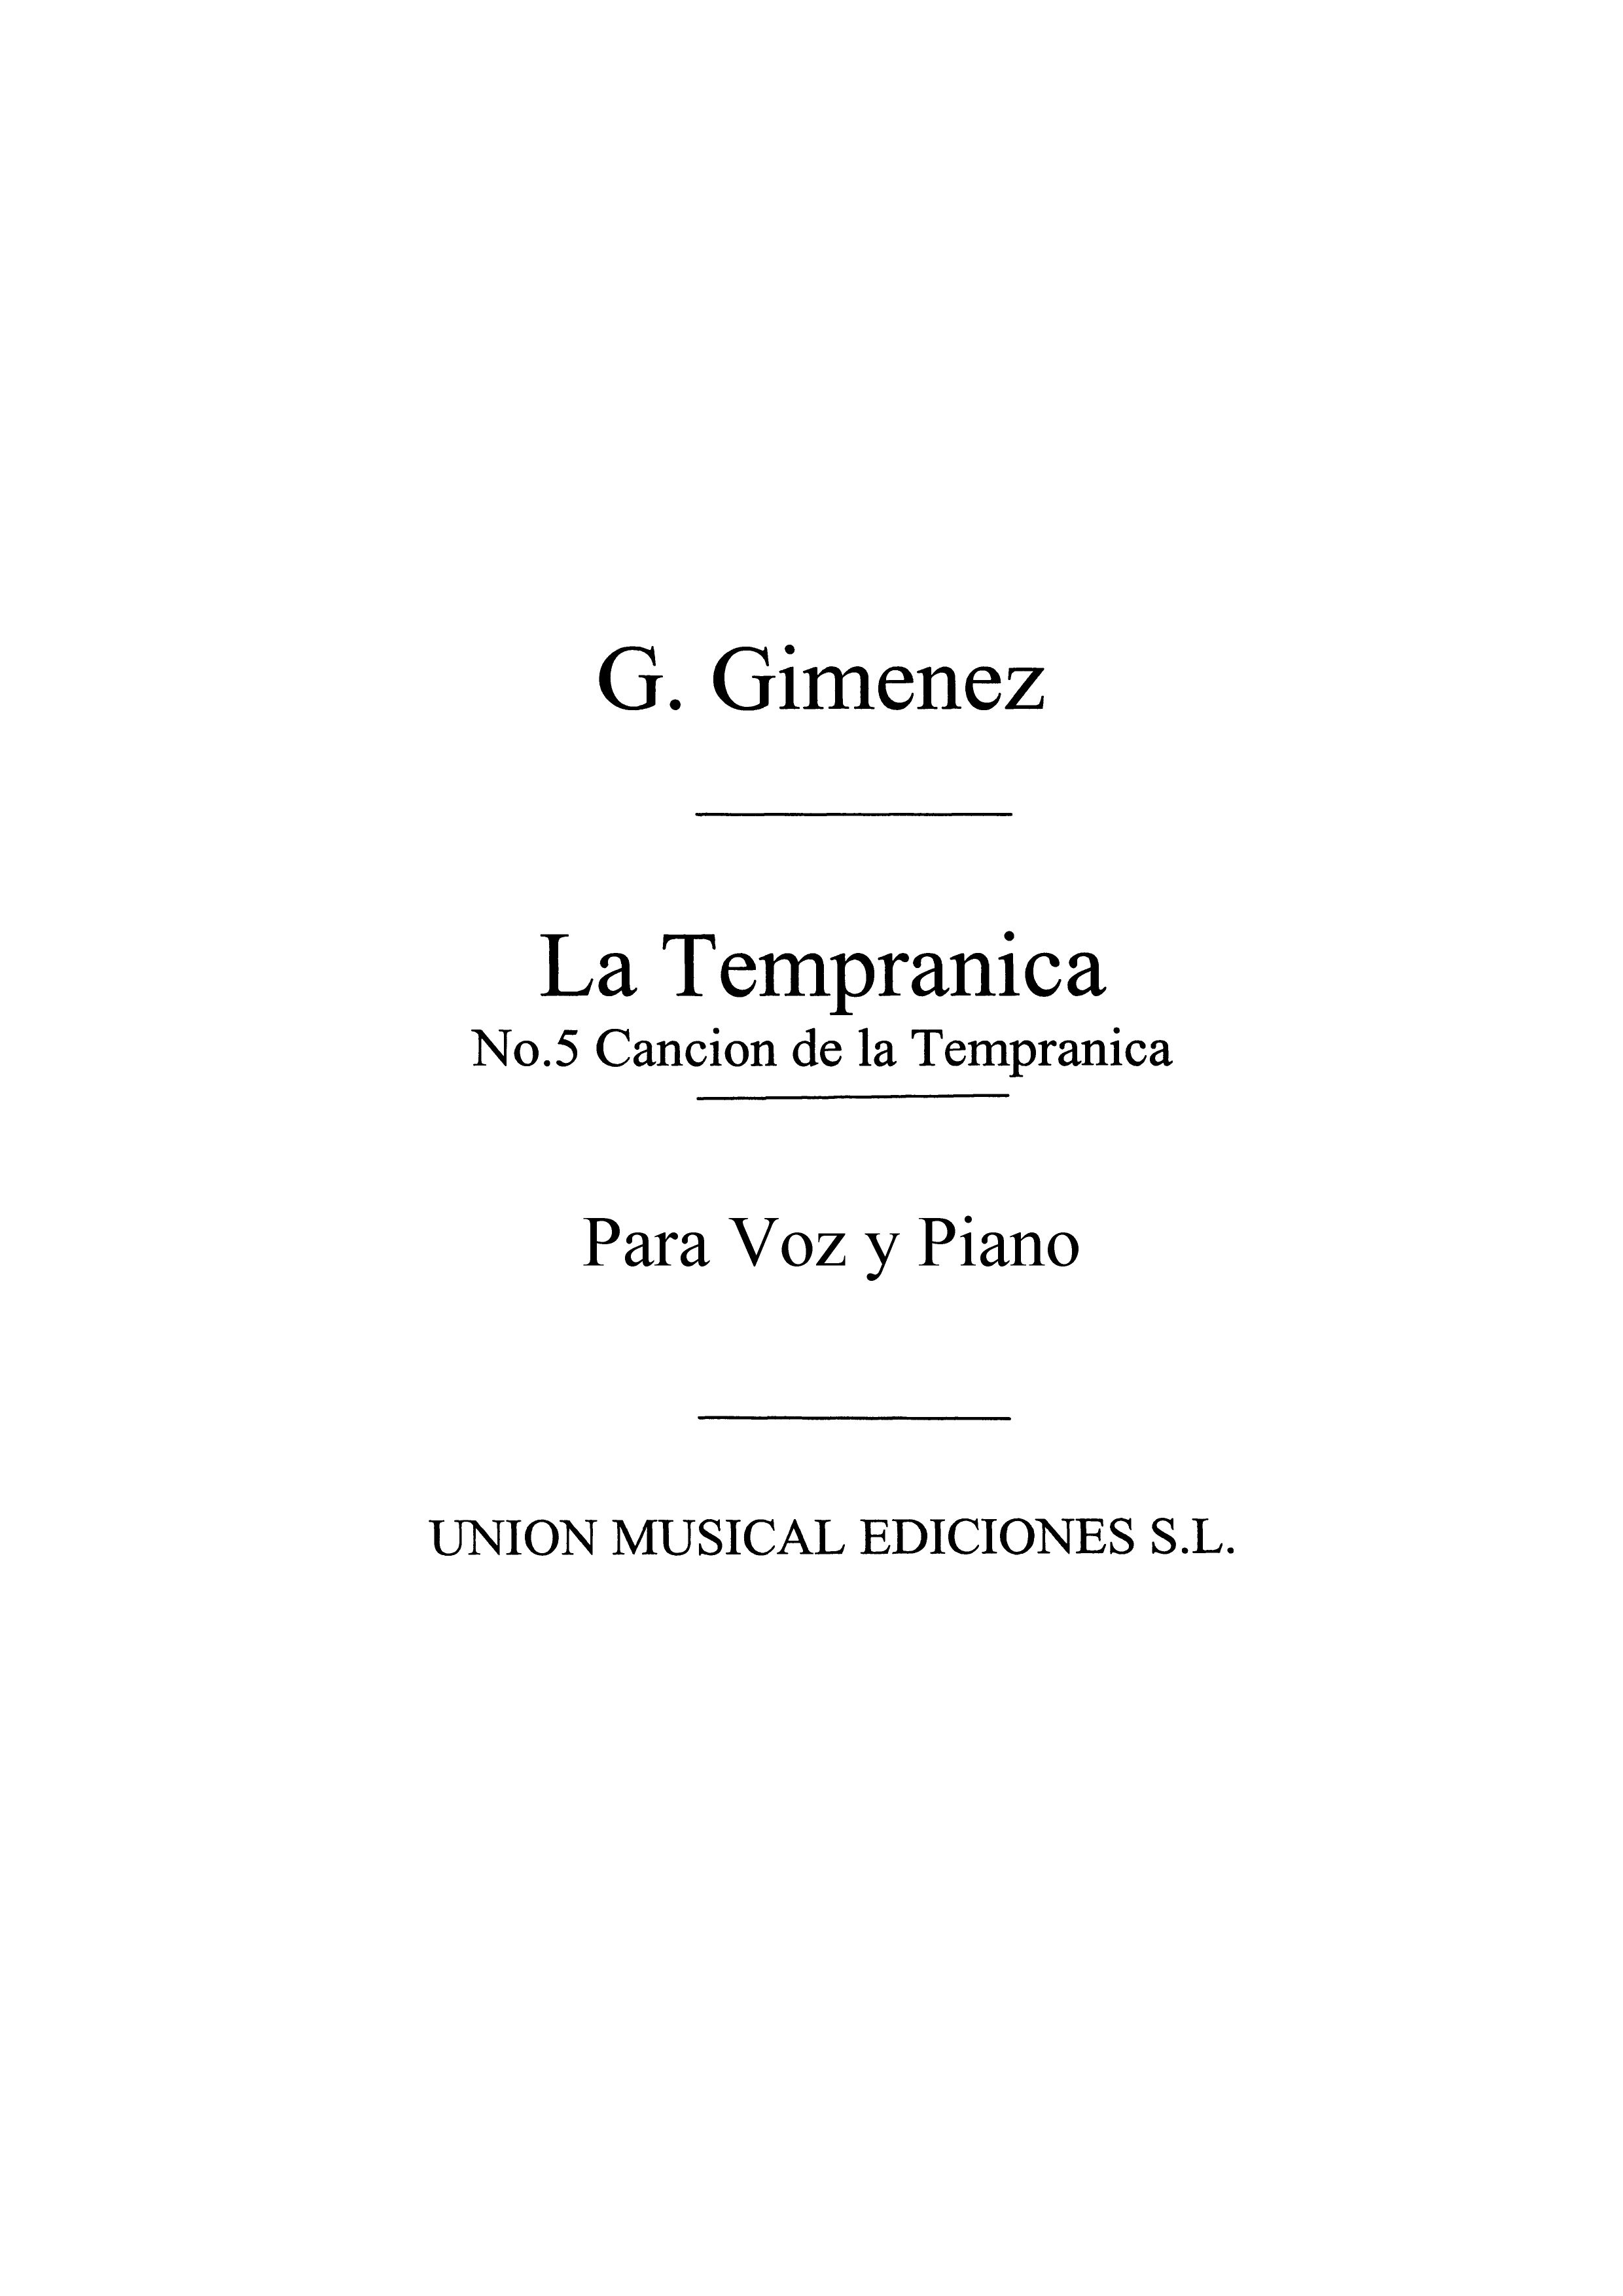 Gimenez: Cancion De La Tempranica De La Tempranica for Voice and Piano